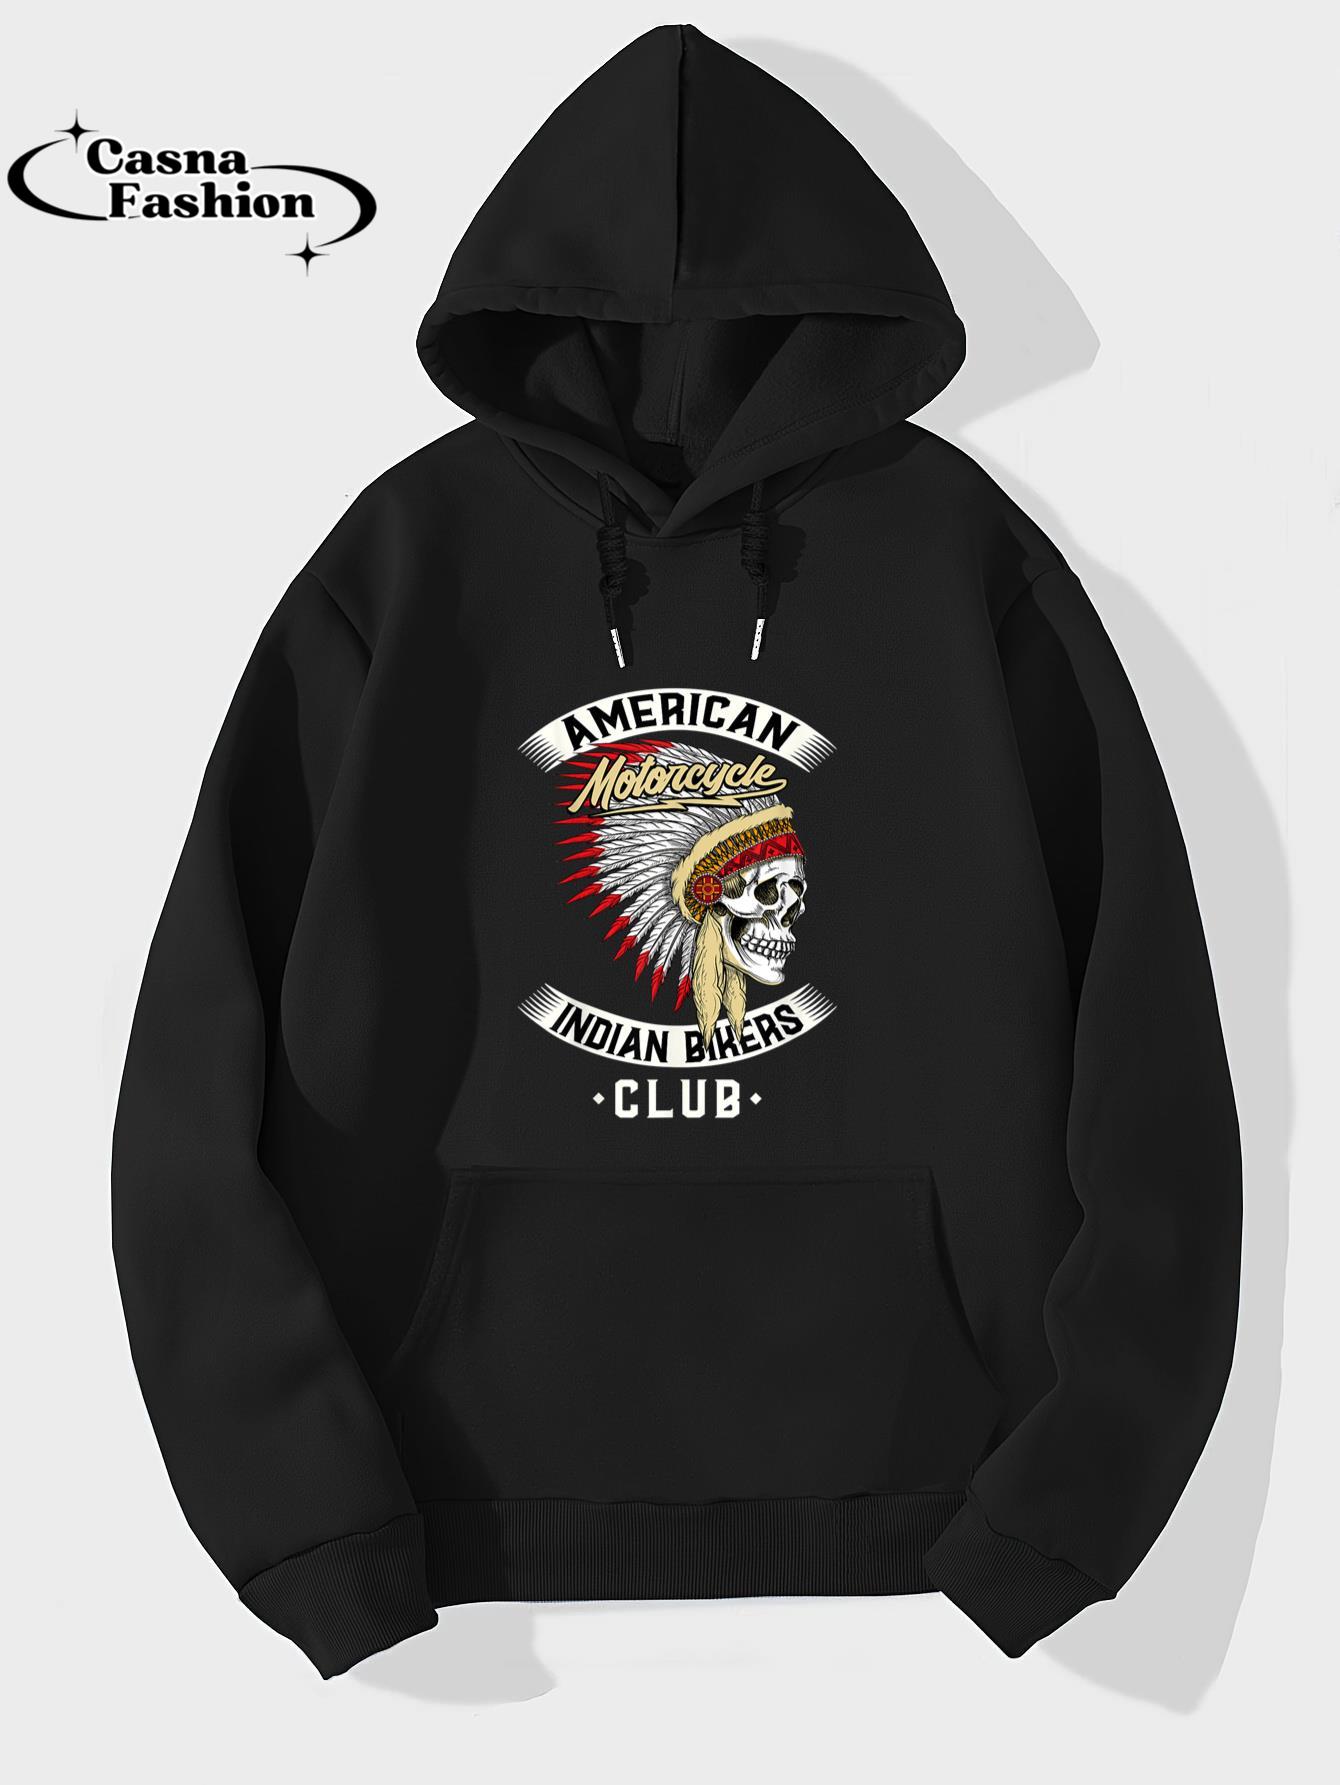 casnafashion_Hoodie_American Motorcycle Indian Bikers Club - Chopper Biker T-Shirt_hoodie_black hoodie